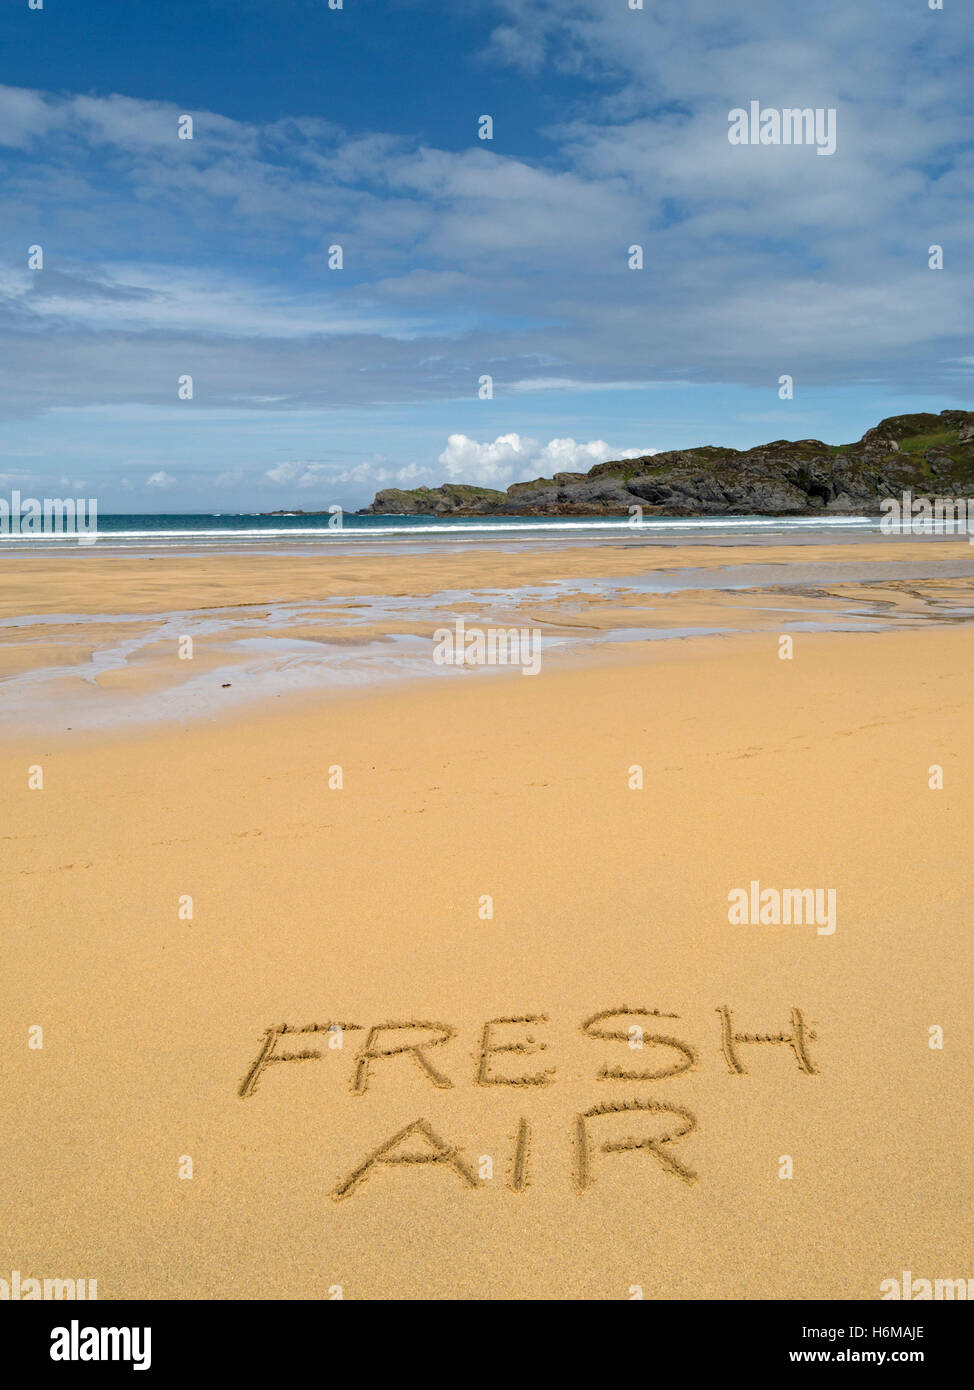 Les mots "Air frais" écrit en jaune d'or de sable, déserte à distance à distance plage écossais. Banque D'Images